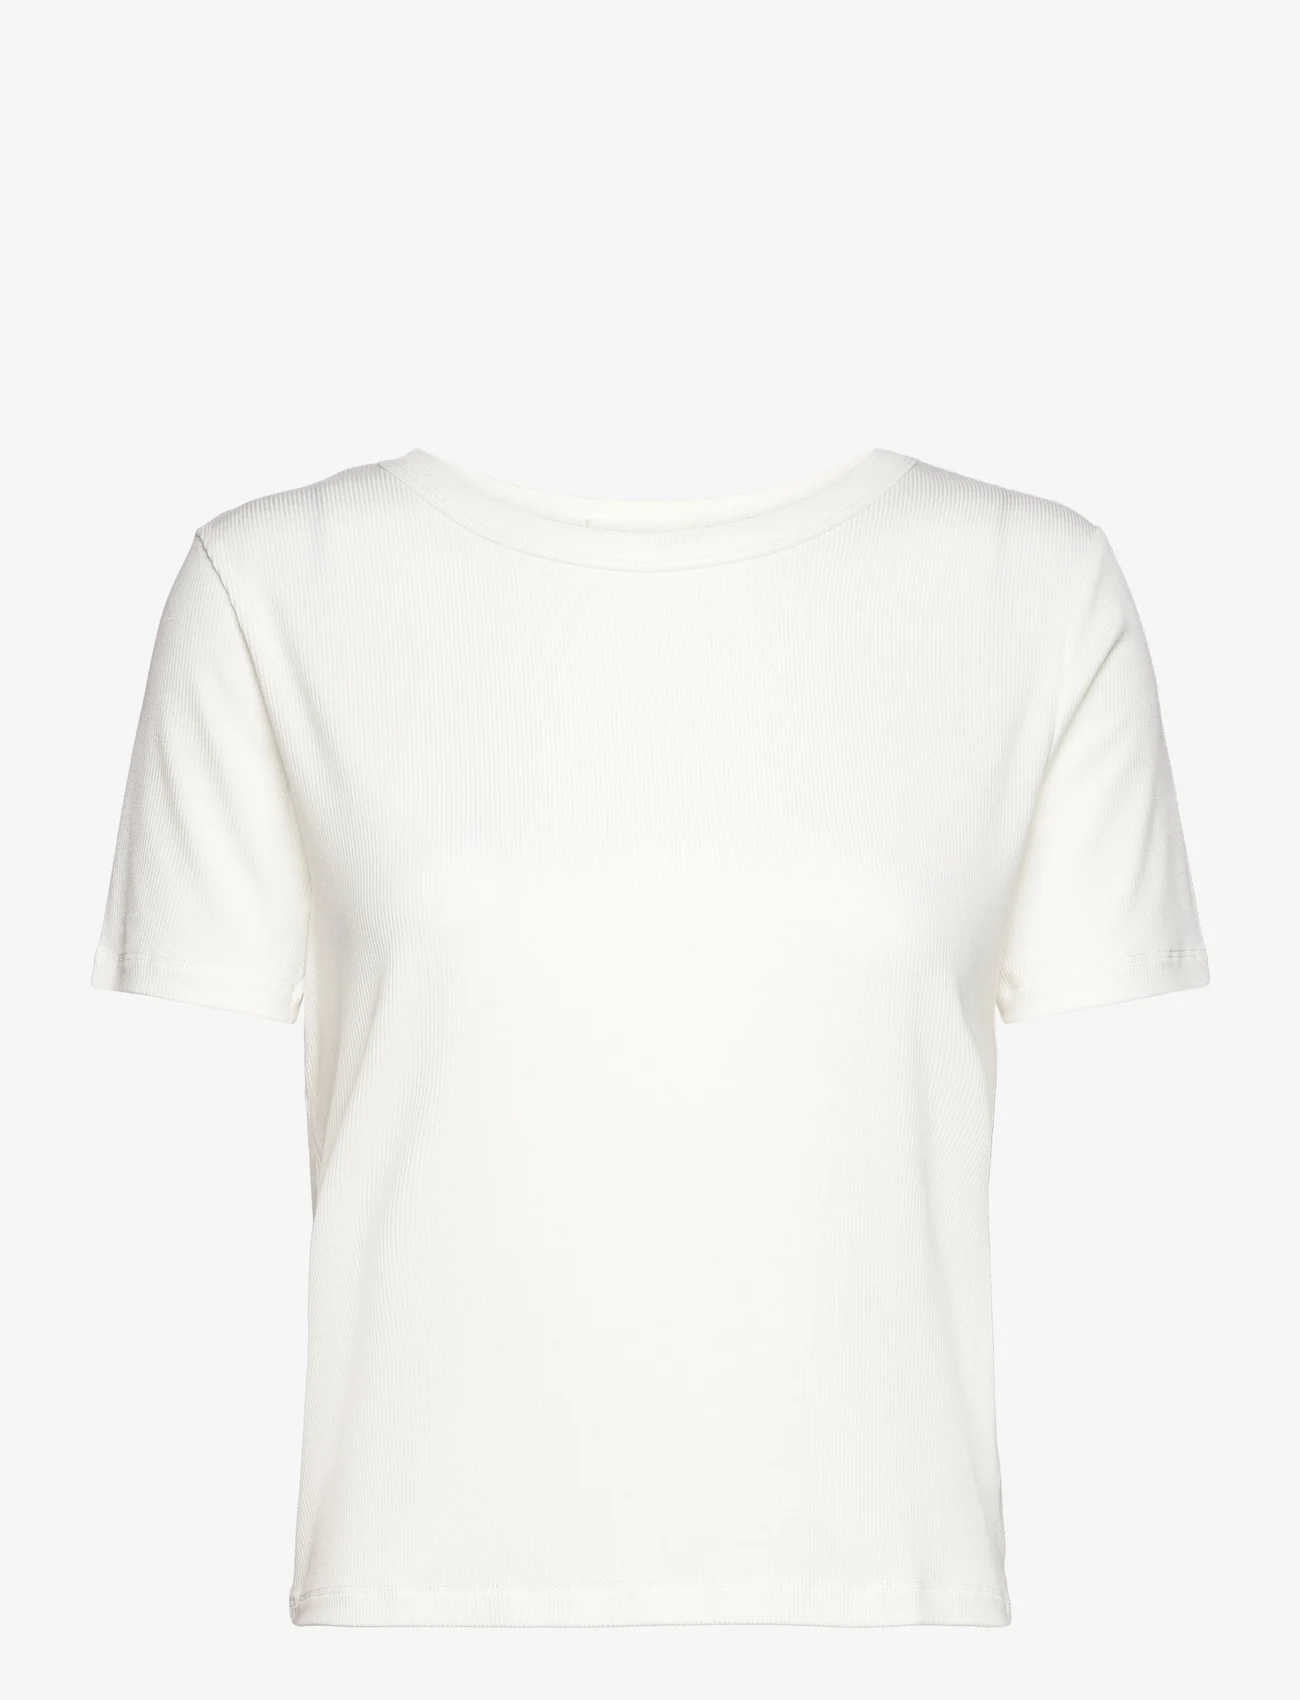 Sofie Schnoor - T-Shirt - laveste priser - white - 0